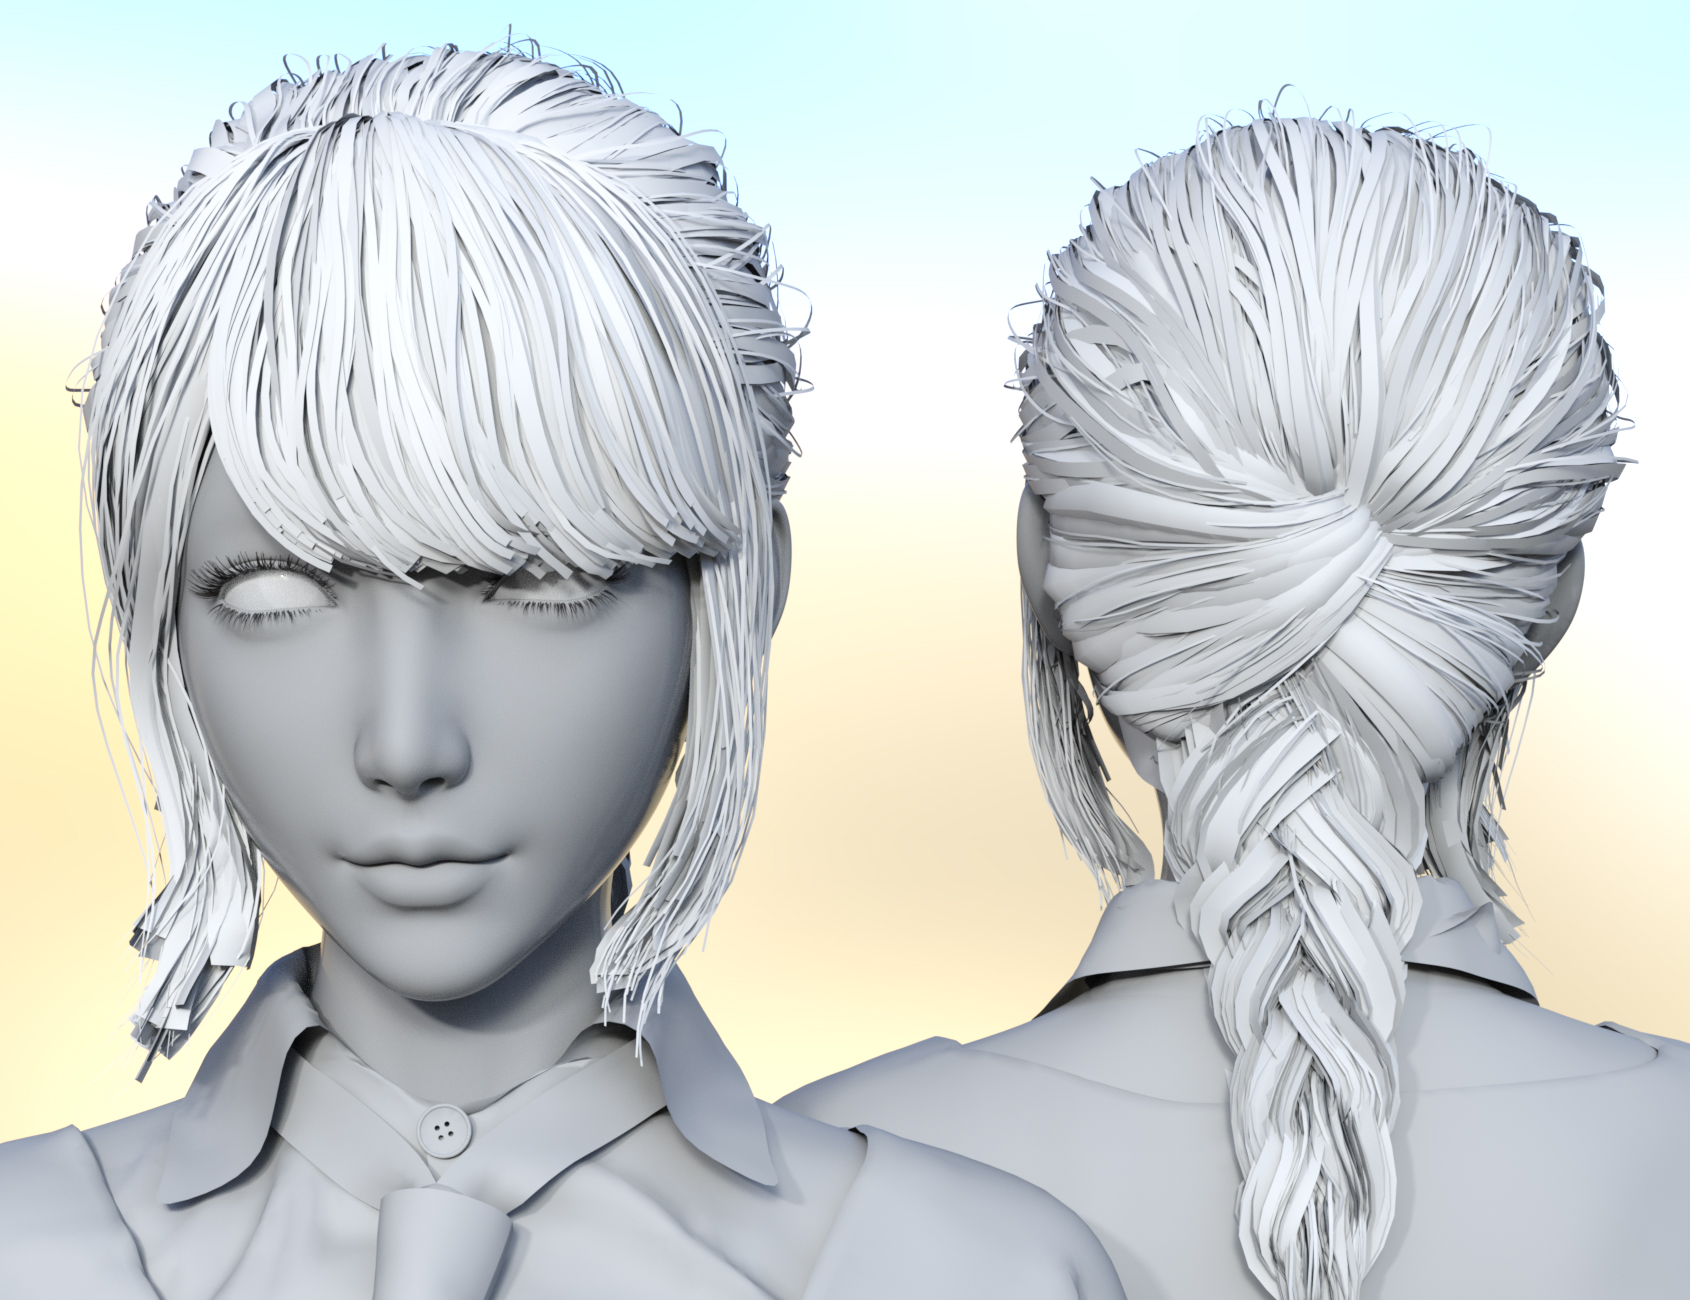 Gu Yu and Gu Yu Hair for Genesis 8.1 Female by: Crocodile Liu, 3D Models by Daz 3D